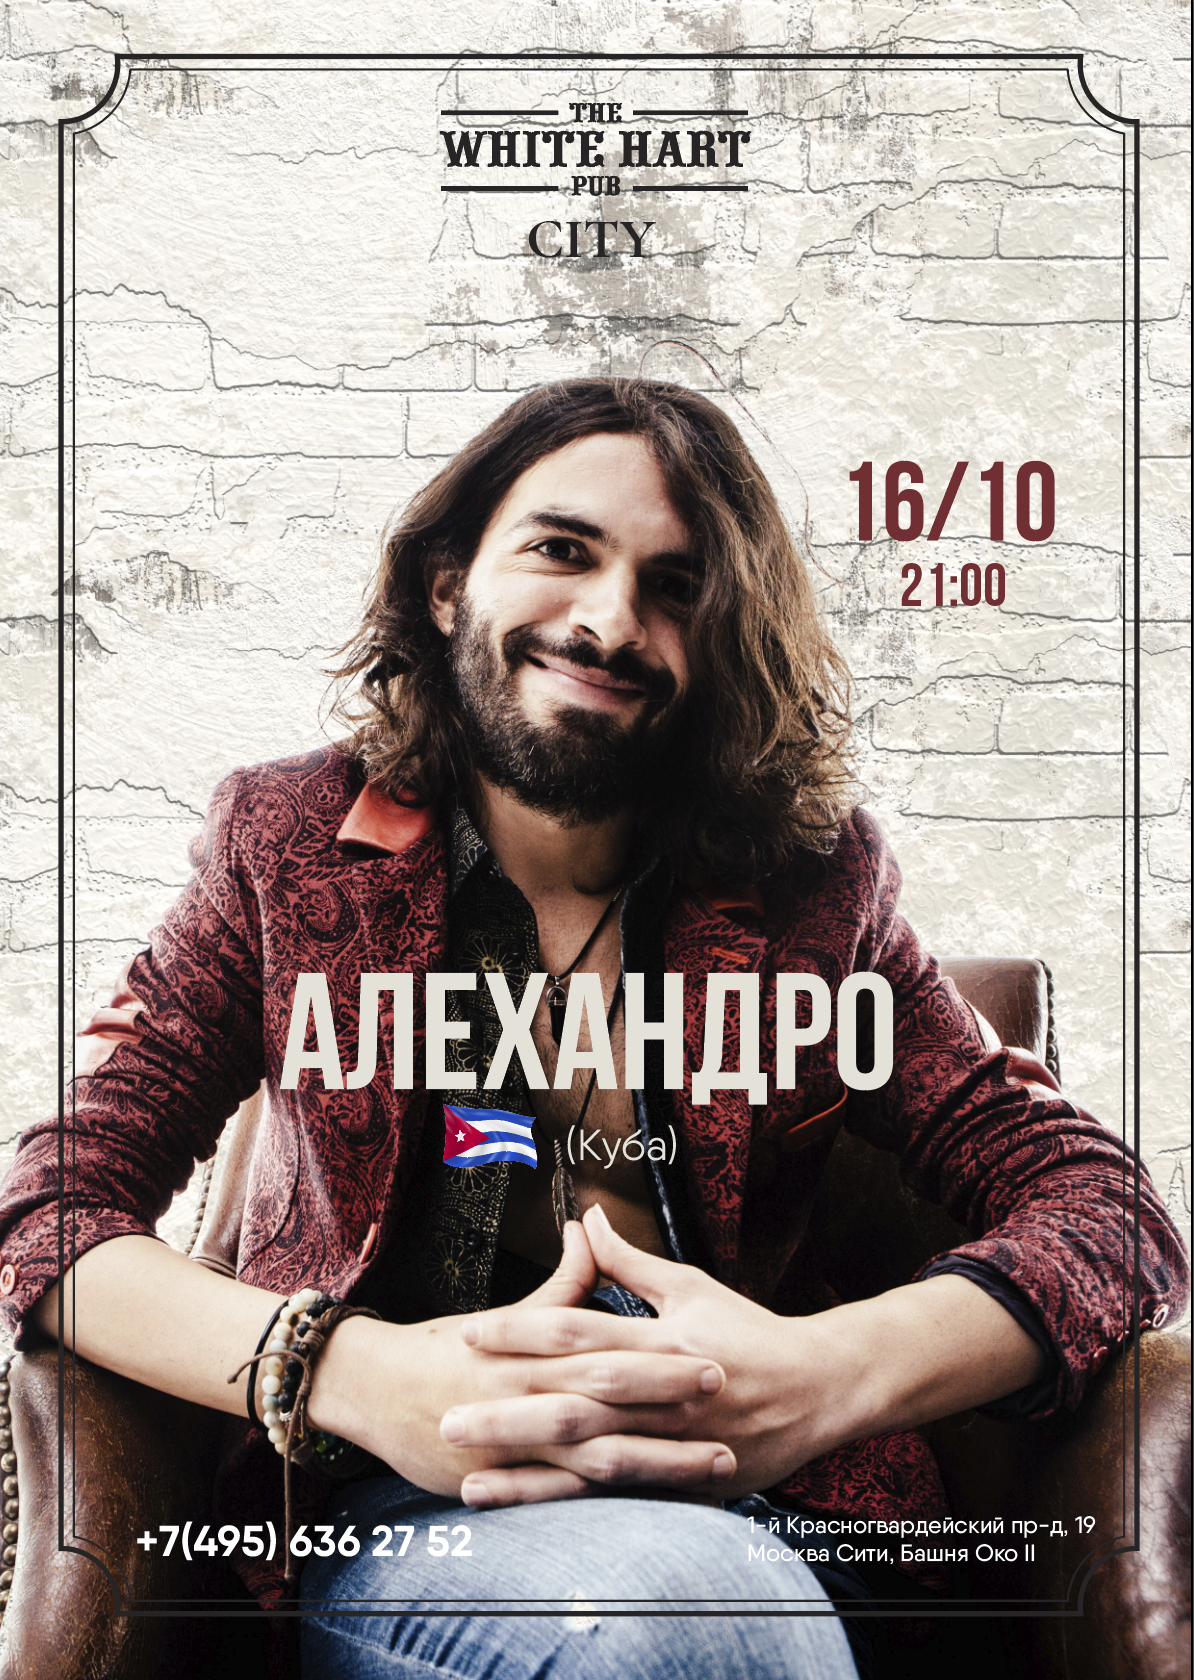 Афиша! 16 октября — Кубинский исполнитель Алехандро в White Hart Pub Moscow City